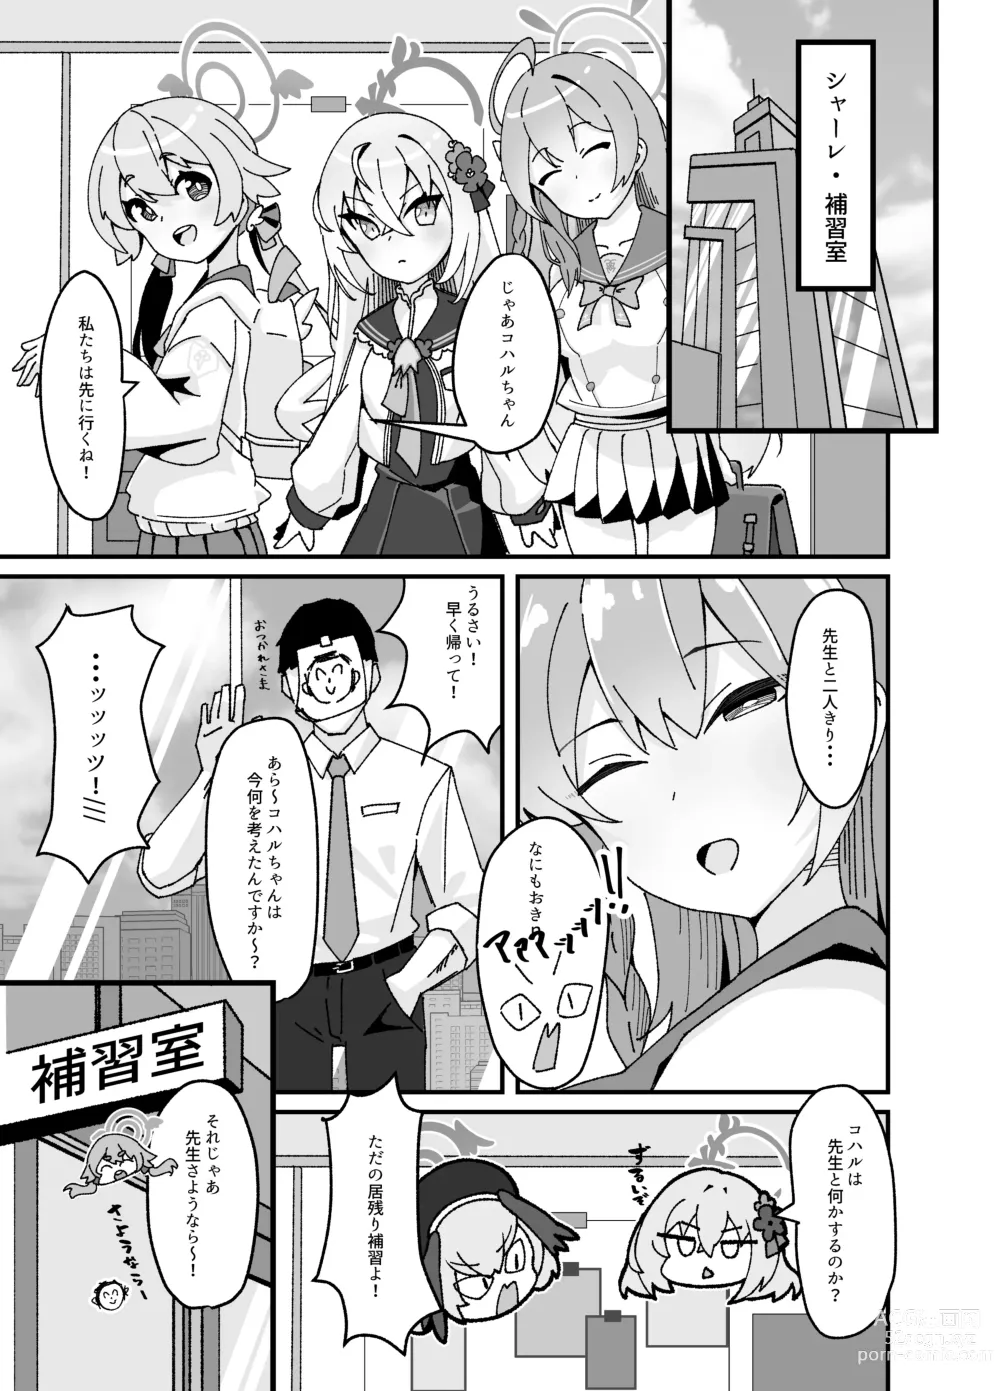 Page 5 of doujinshi Anna Koto ya Konna Koto mo Watashi no Omou ga Mama!?